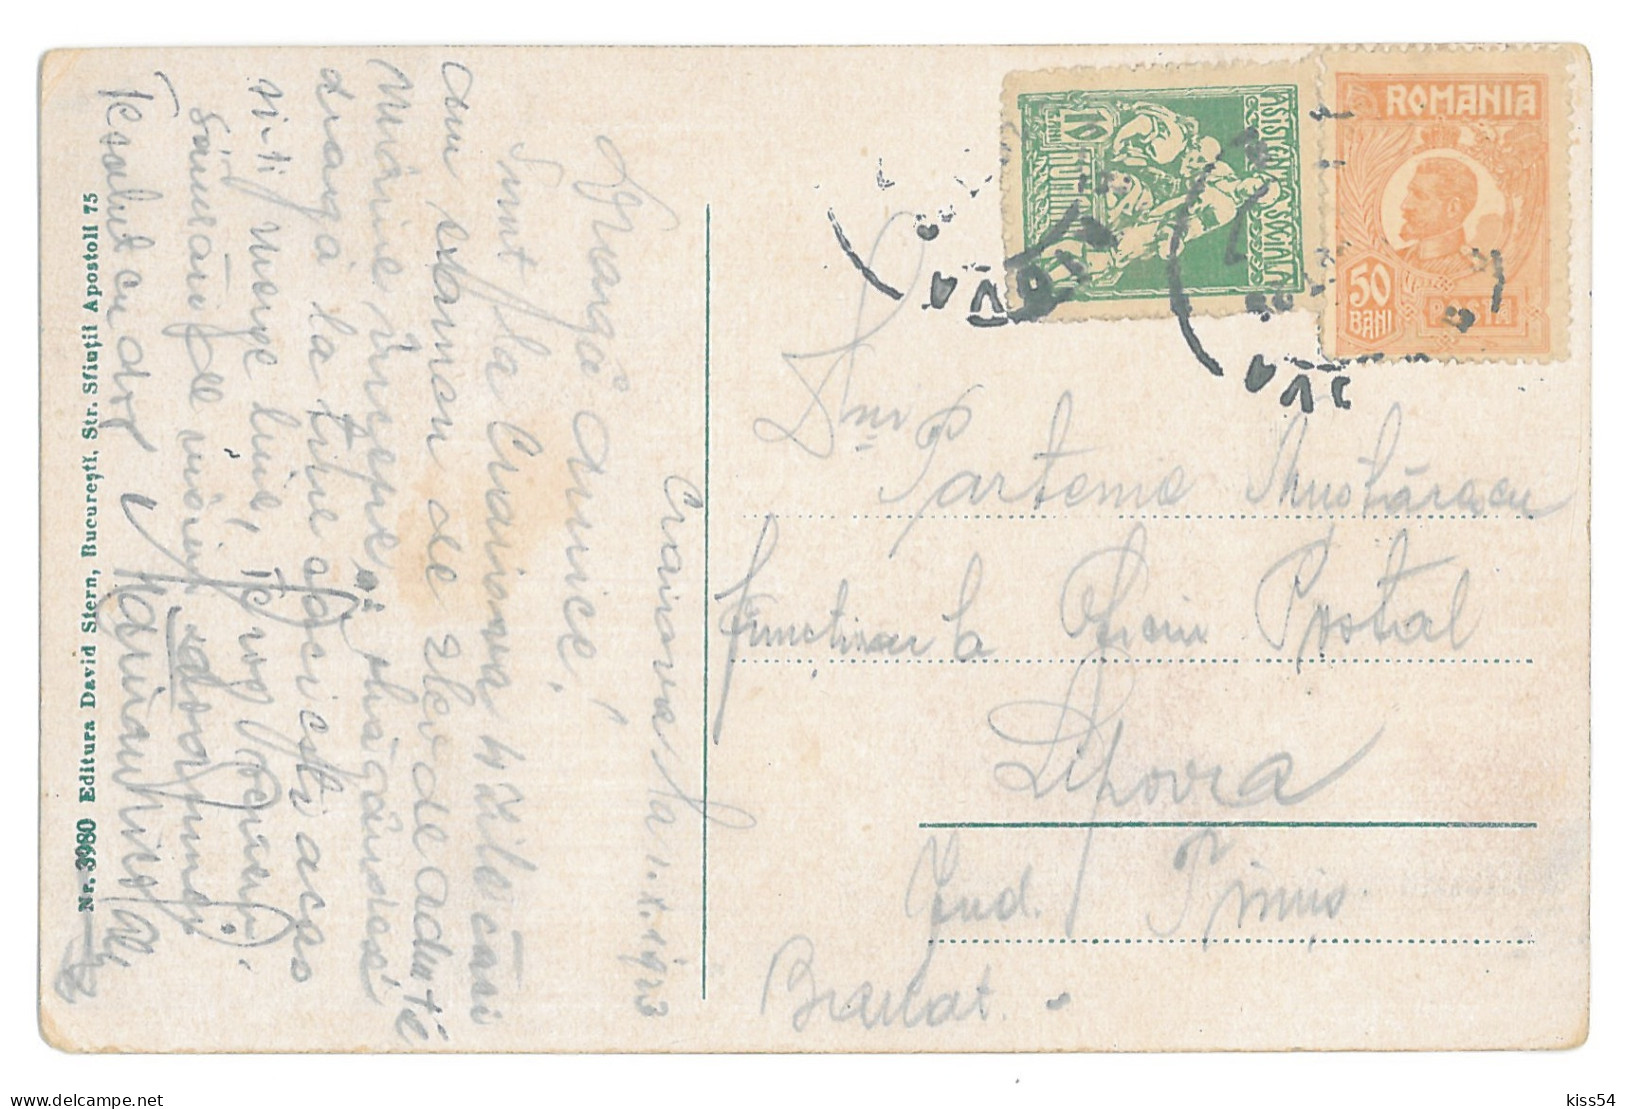 RO 39 - 14741 CRAIOVA, Market, Romania - Old Postcard - Used - 1923 - Rumänien